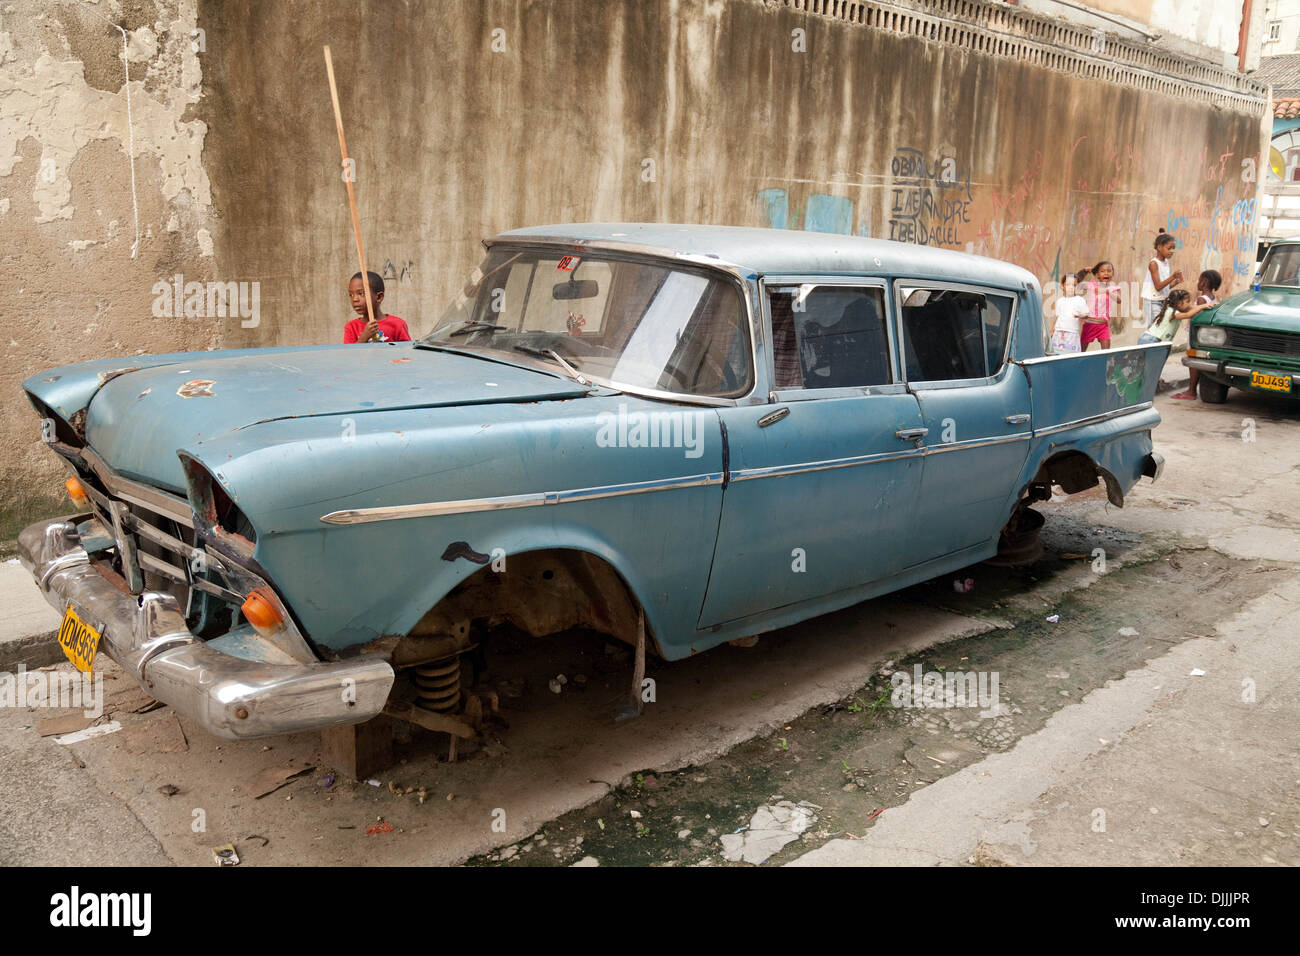 Ein altes amerikanisches Auto auf Steinen - Armut in einer armen Gegend von Havanna, Havanna Kuba, Karibik Stockfoto